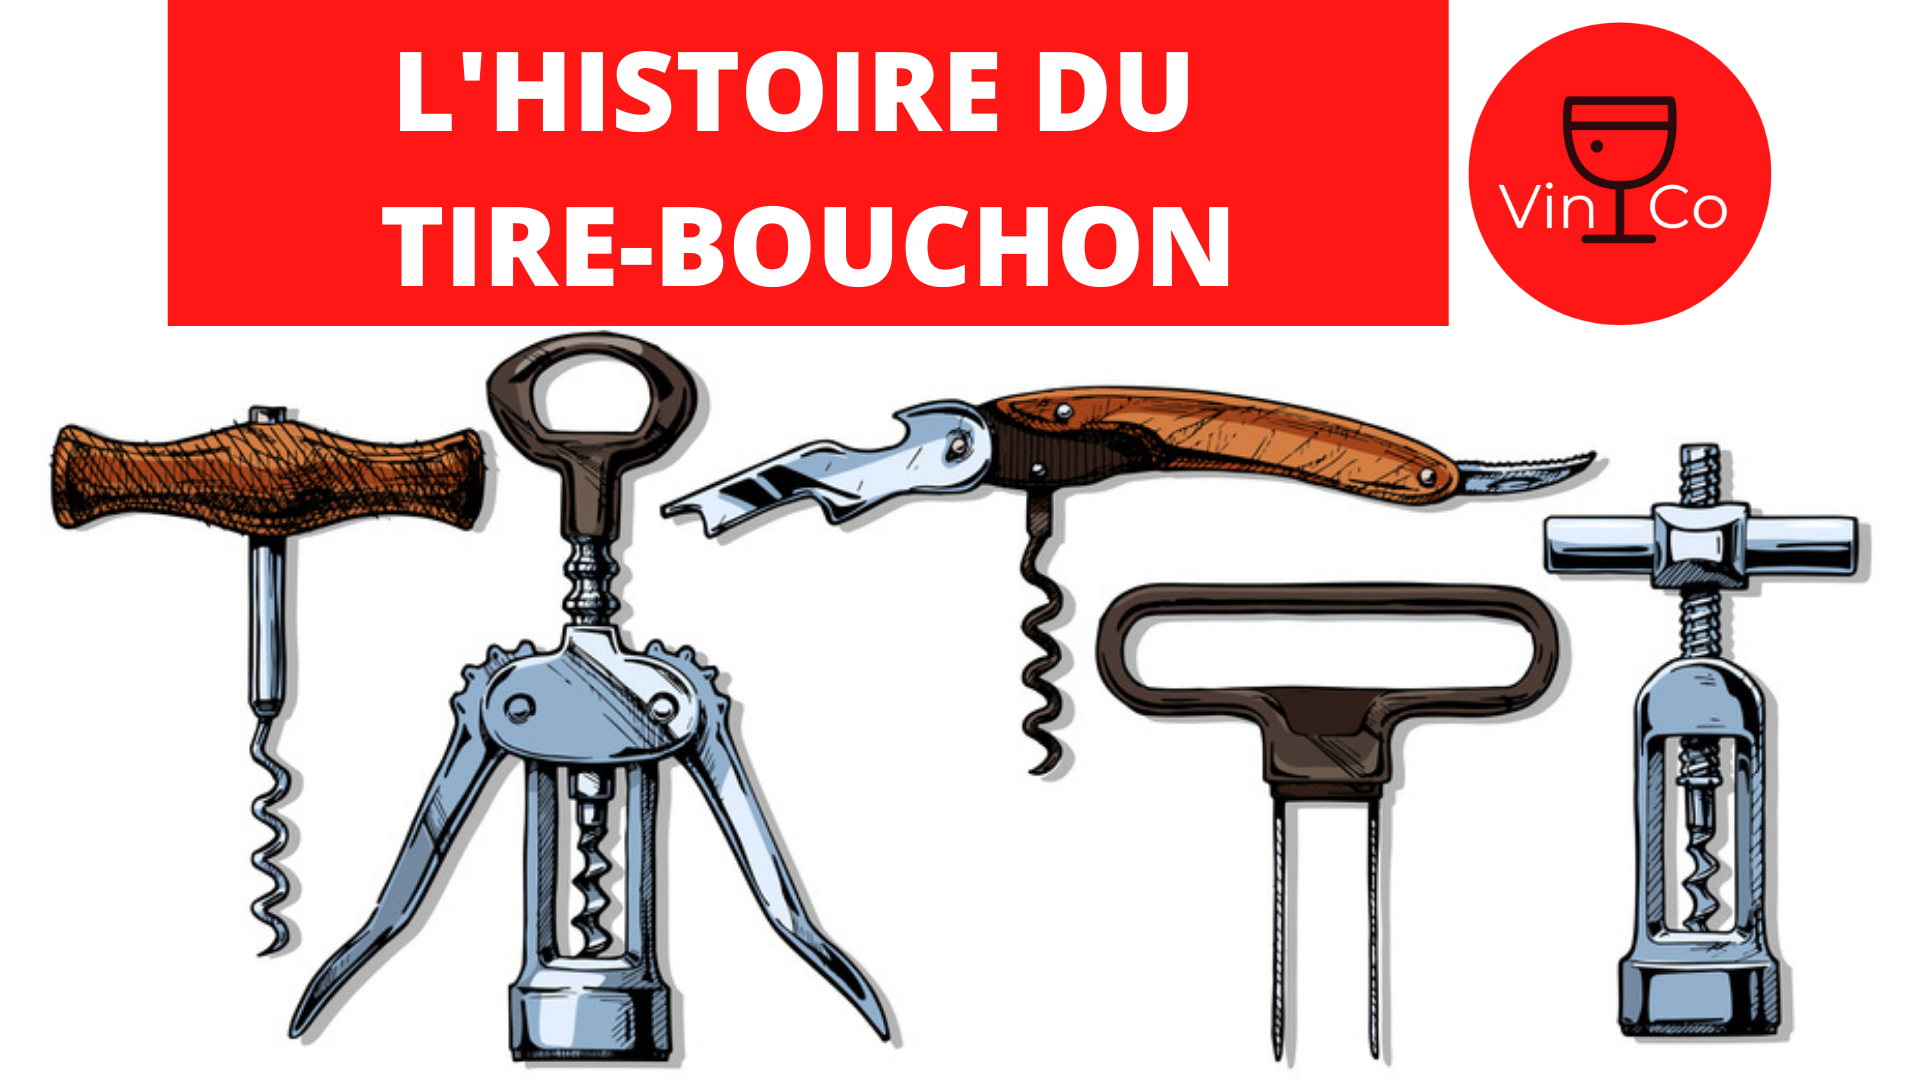 L'HISTOIRE DU TIRE-BOUCHON